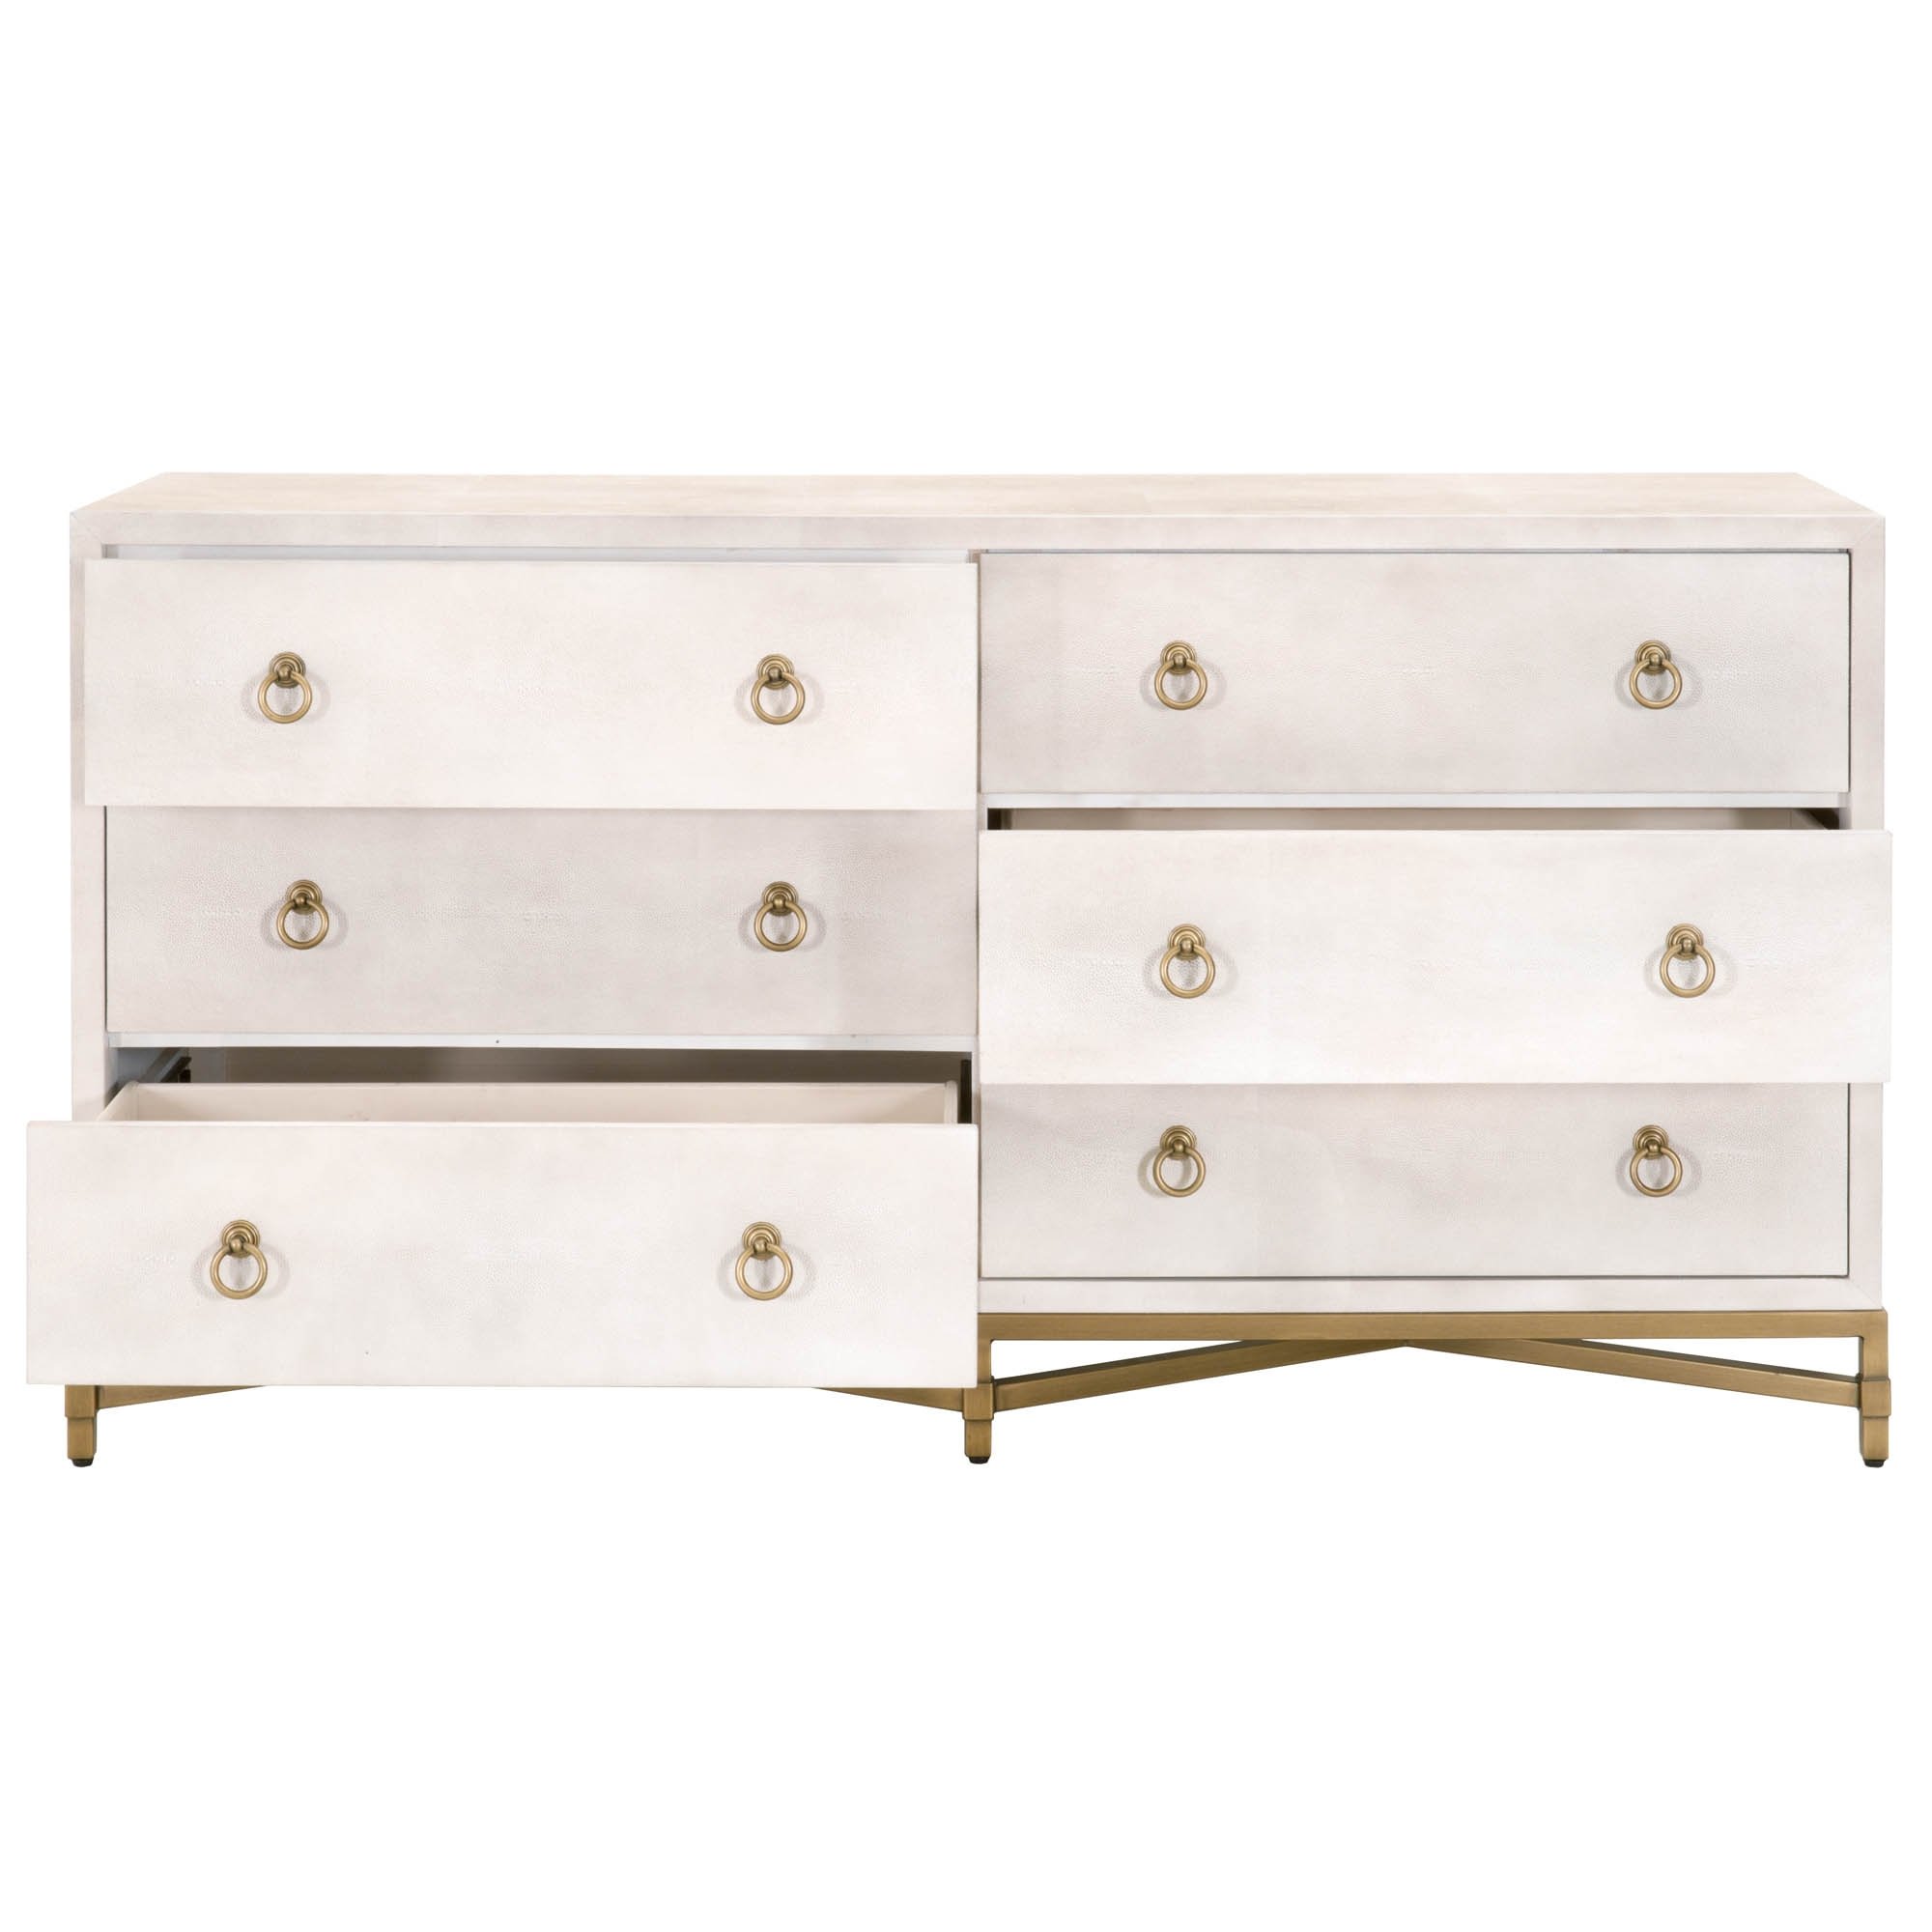 Strand Shagreen 6-Drawer Double Dresser, White & Gold - Image 1